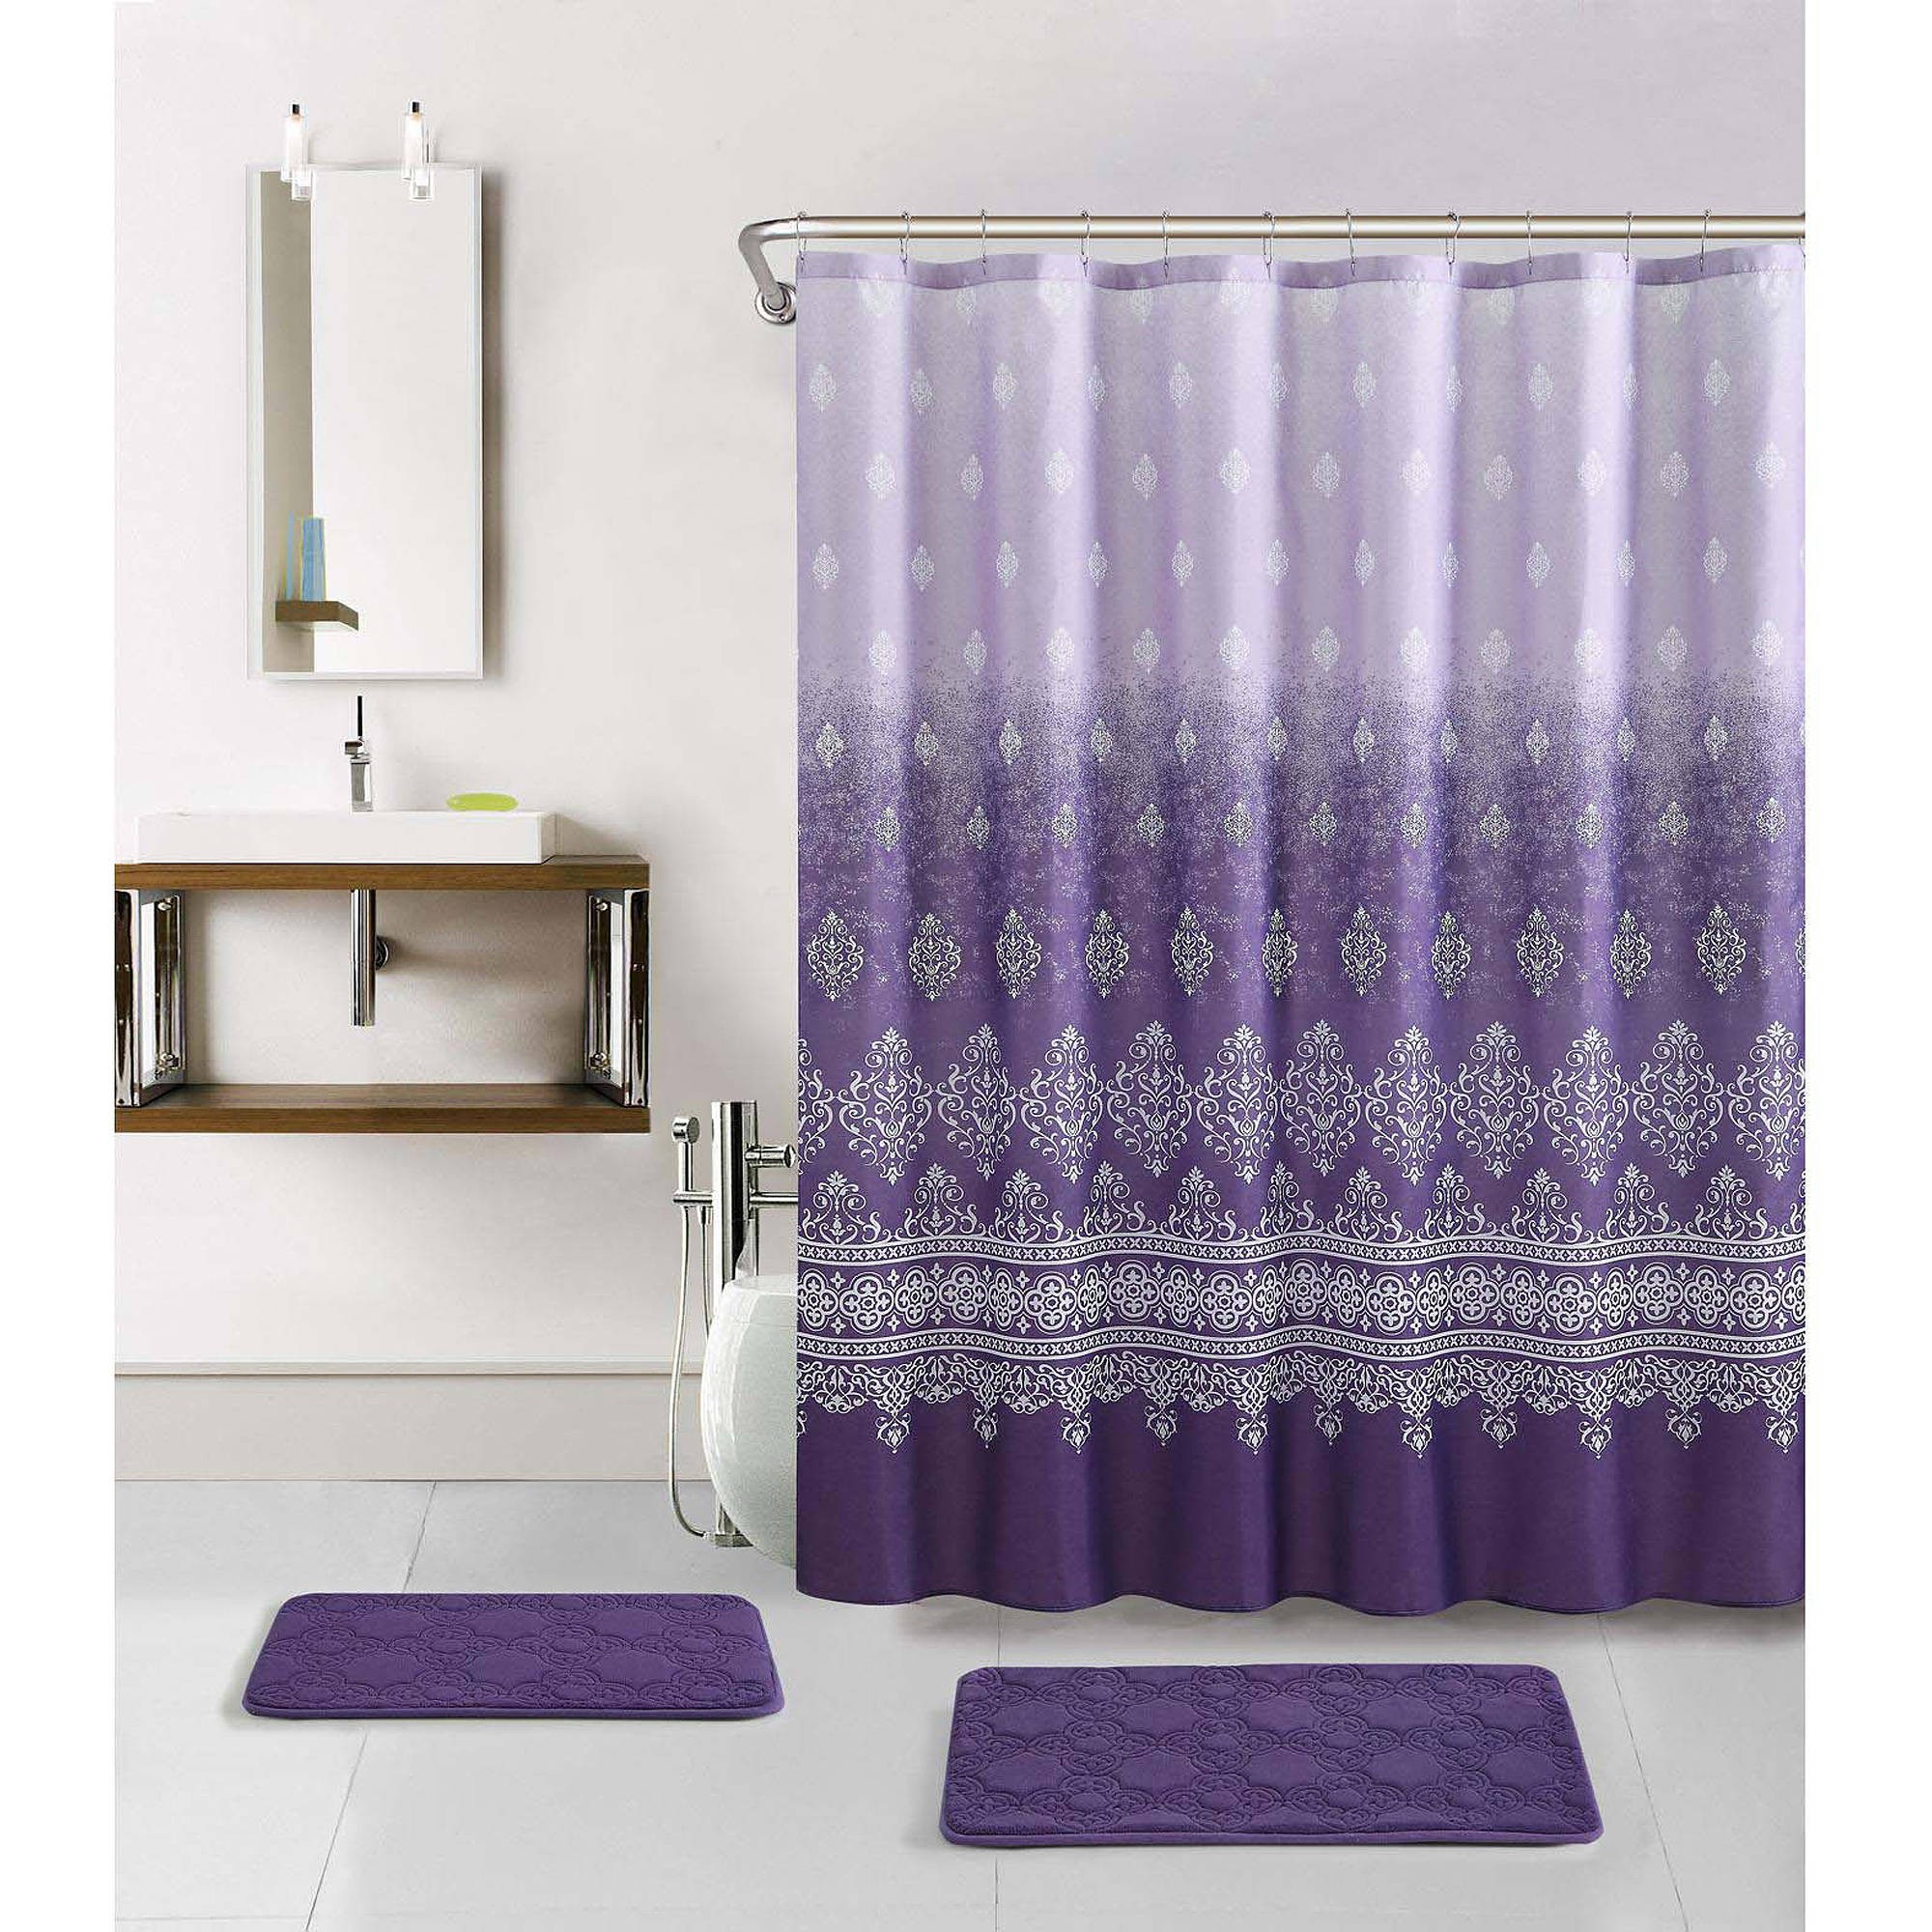 Bathroom pretty walmart shower curtains for pretty